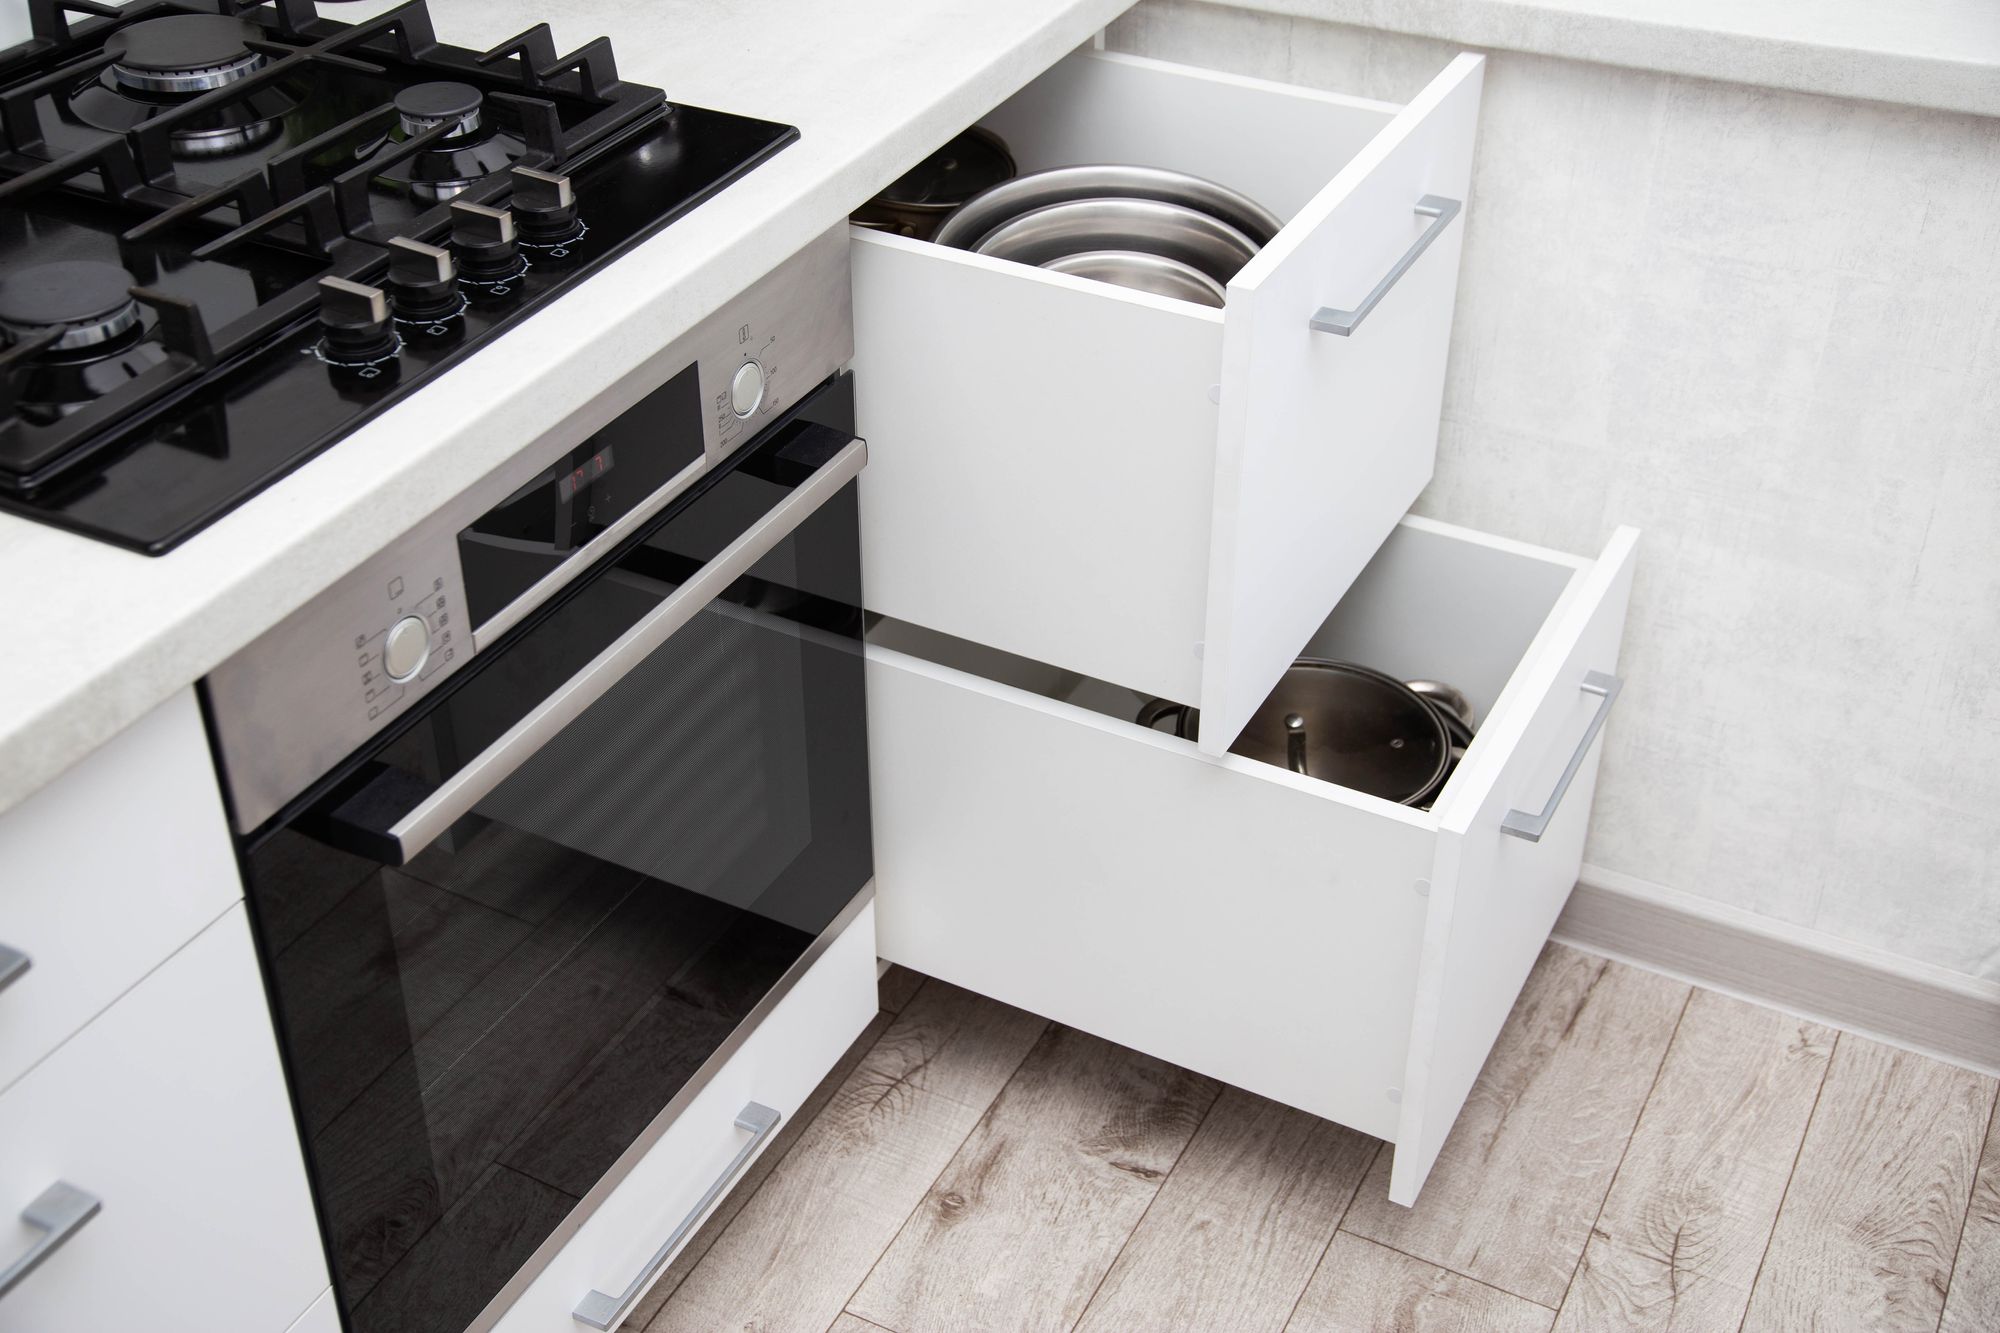 ergonomic kitchen design